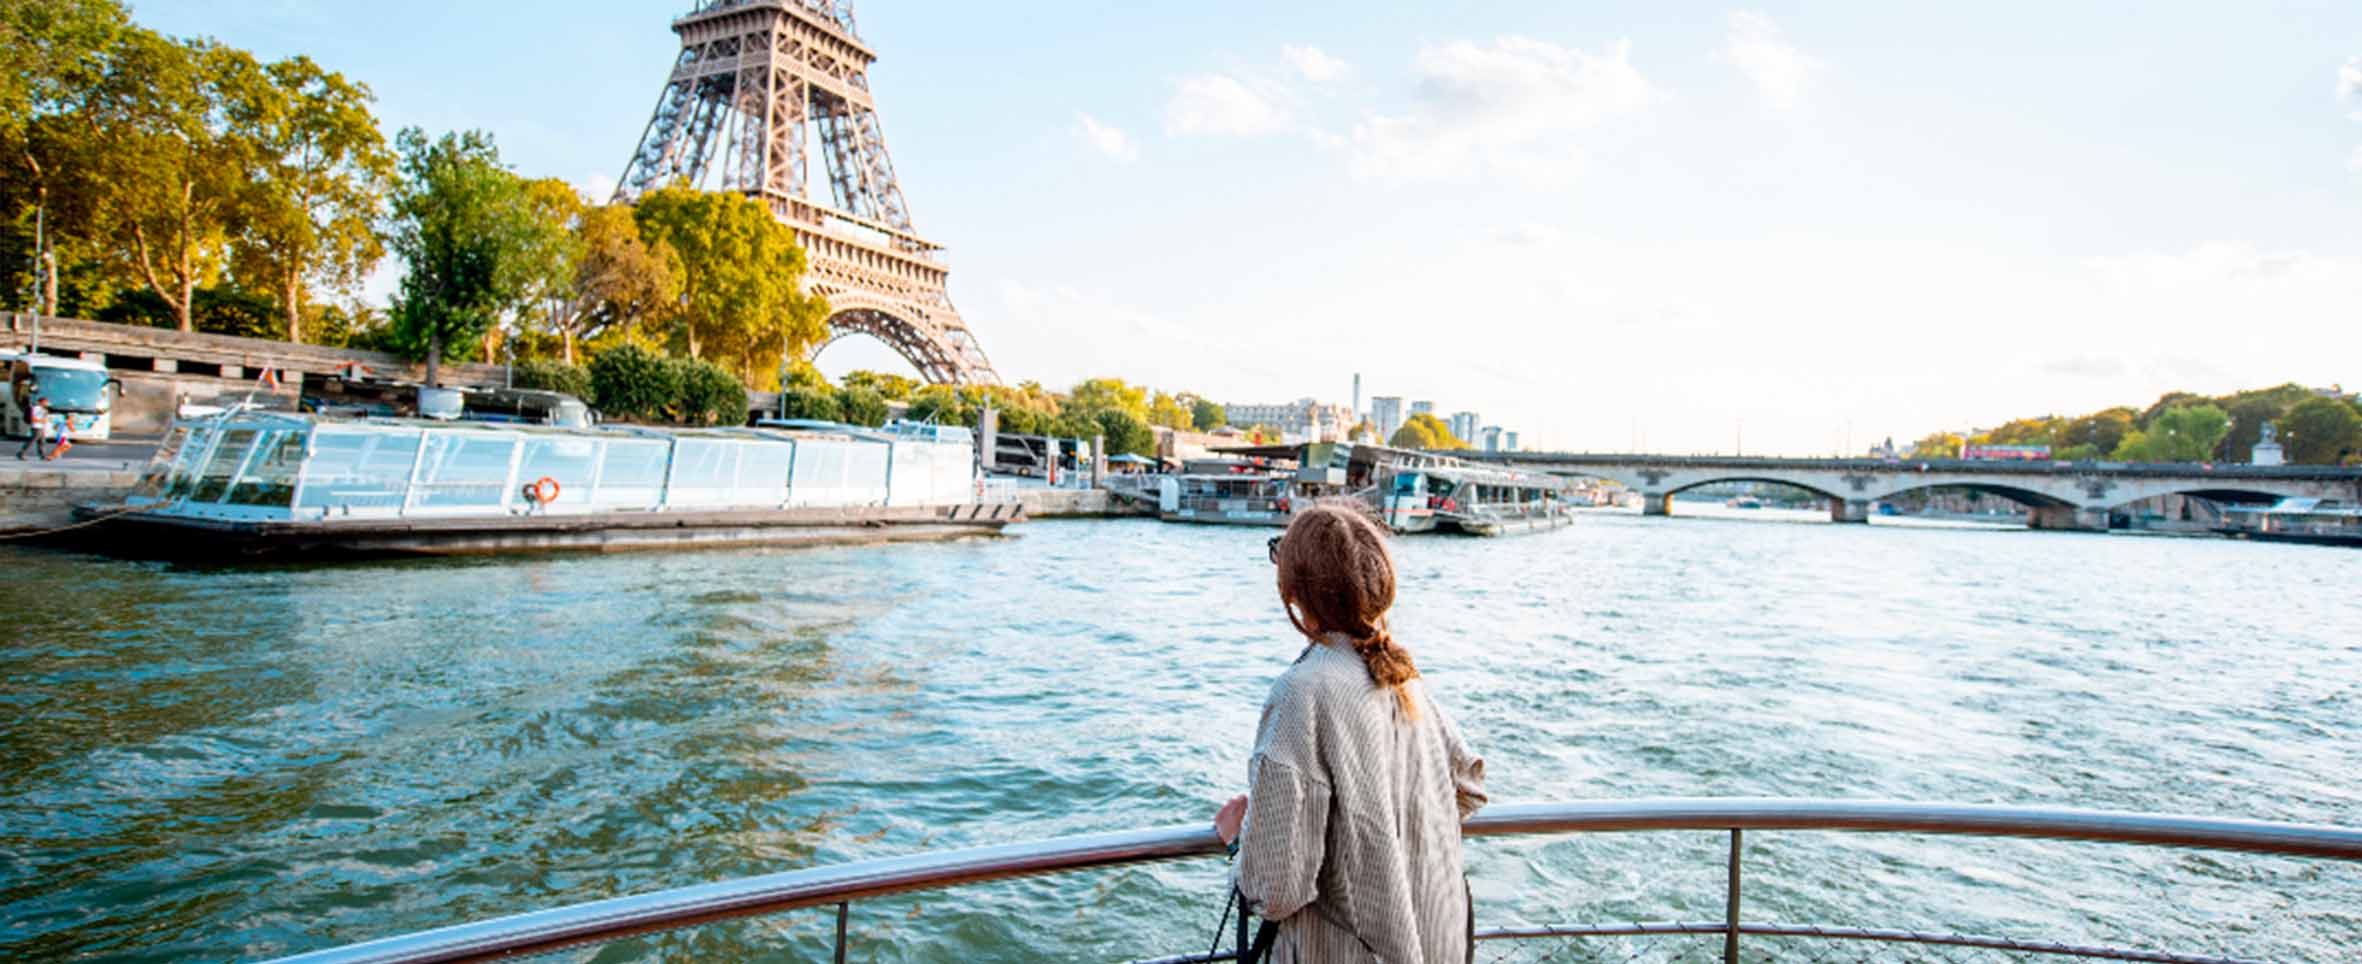 Crucero por el Sena en París con la Torre Eiffel.